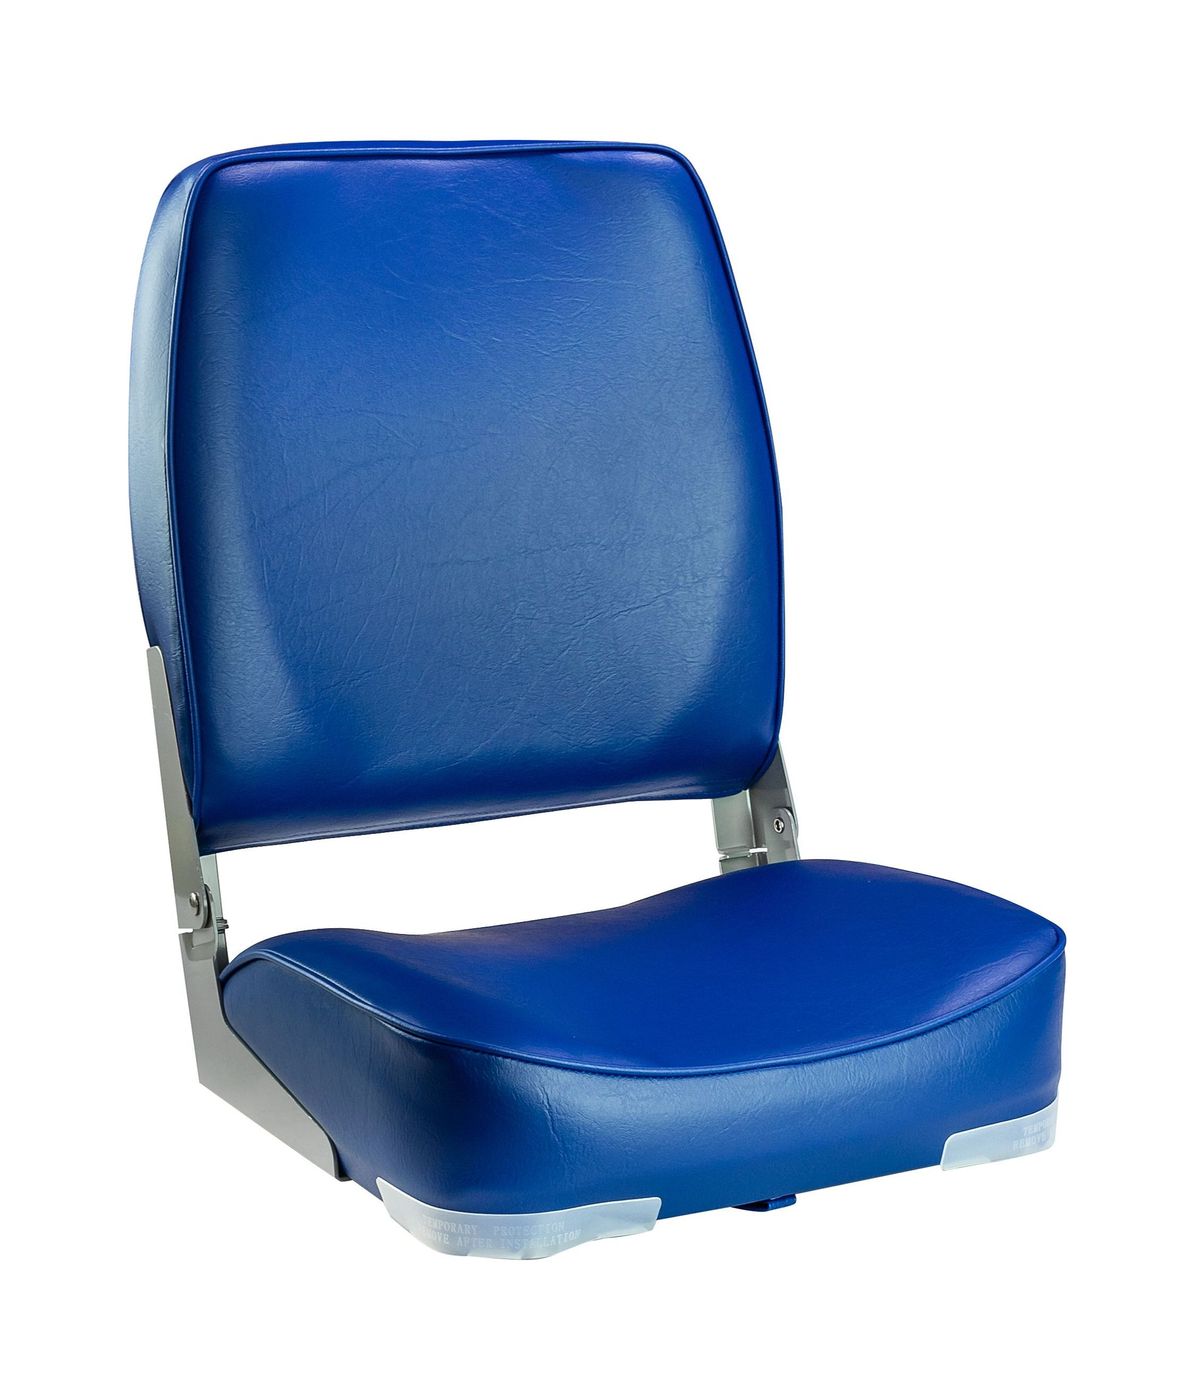 Кресло мягкое складное, высокая спинка, обивка винил, цвет синий, Marine Rocket 75127B-MR стул leset вайд каркас белый велюр синий